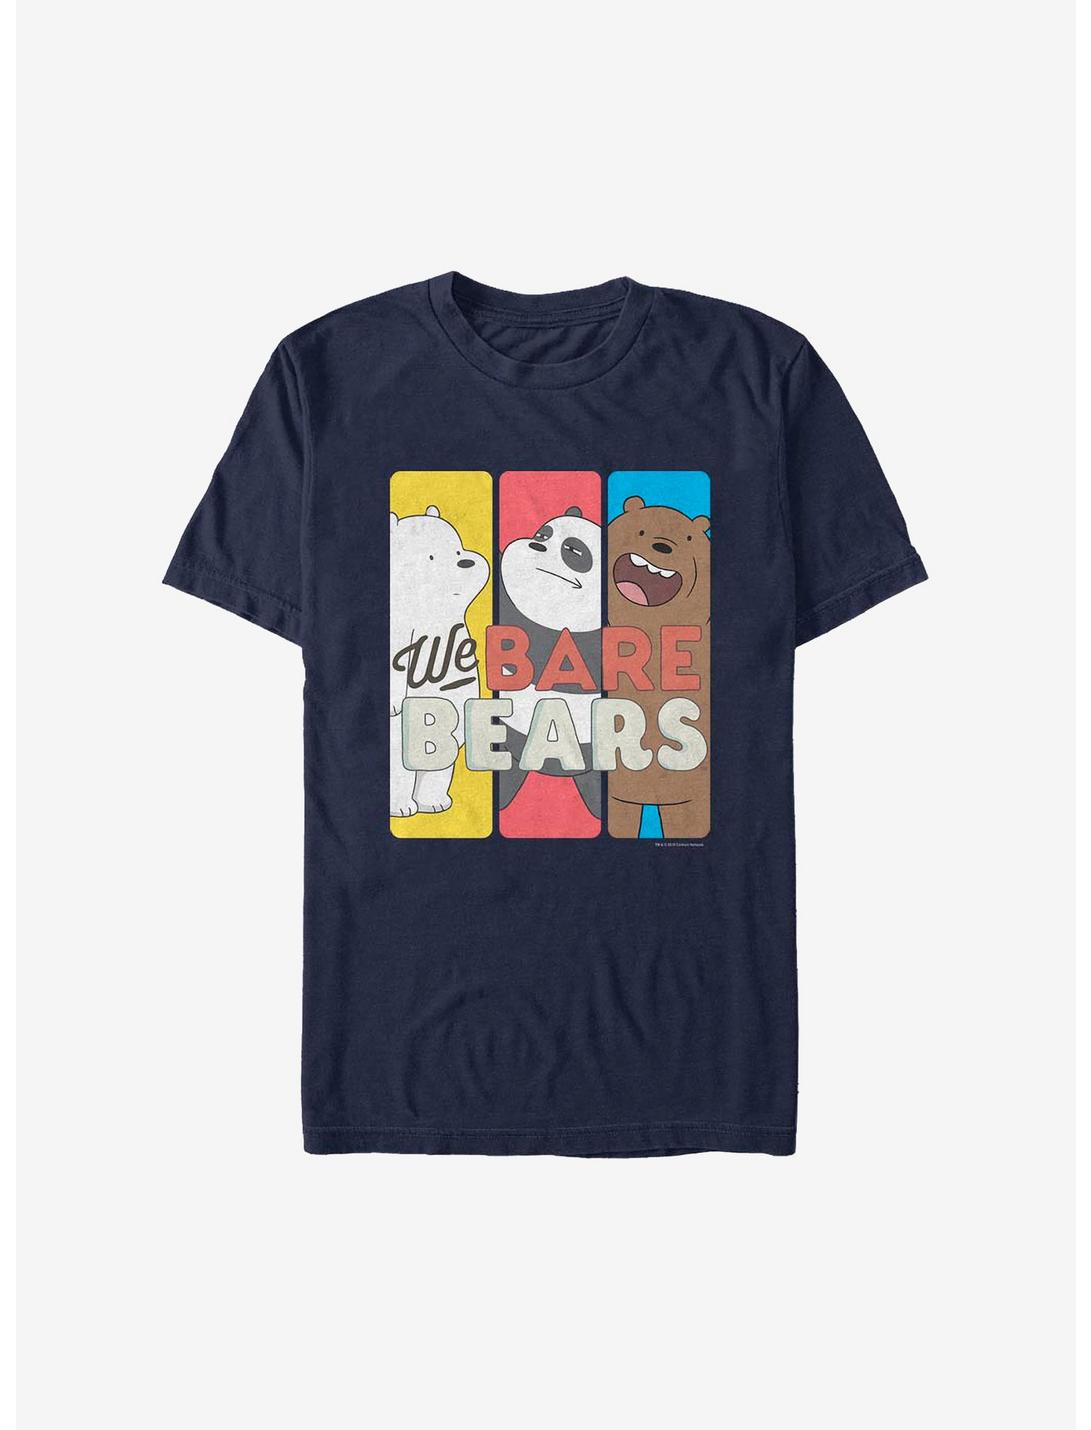 We Bare Bears Tri Bears T-Shirt, NAVY, hi-res